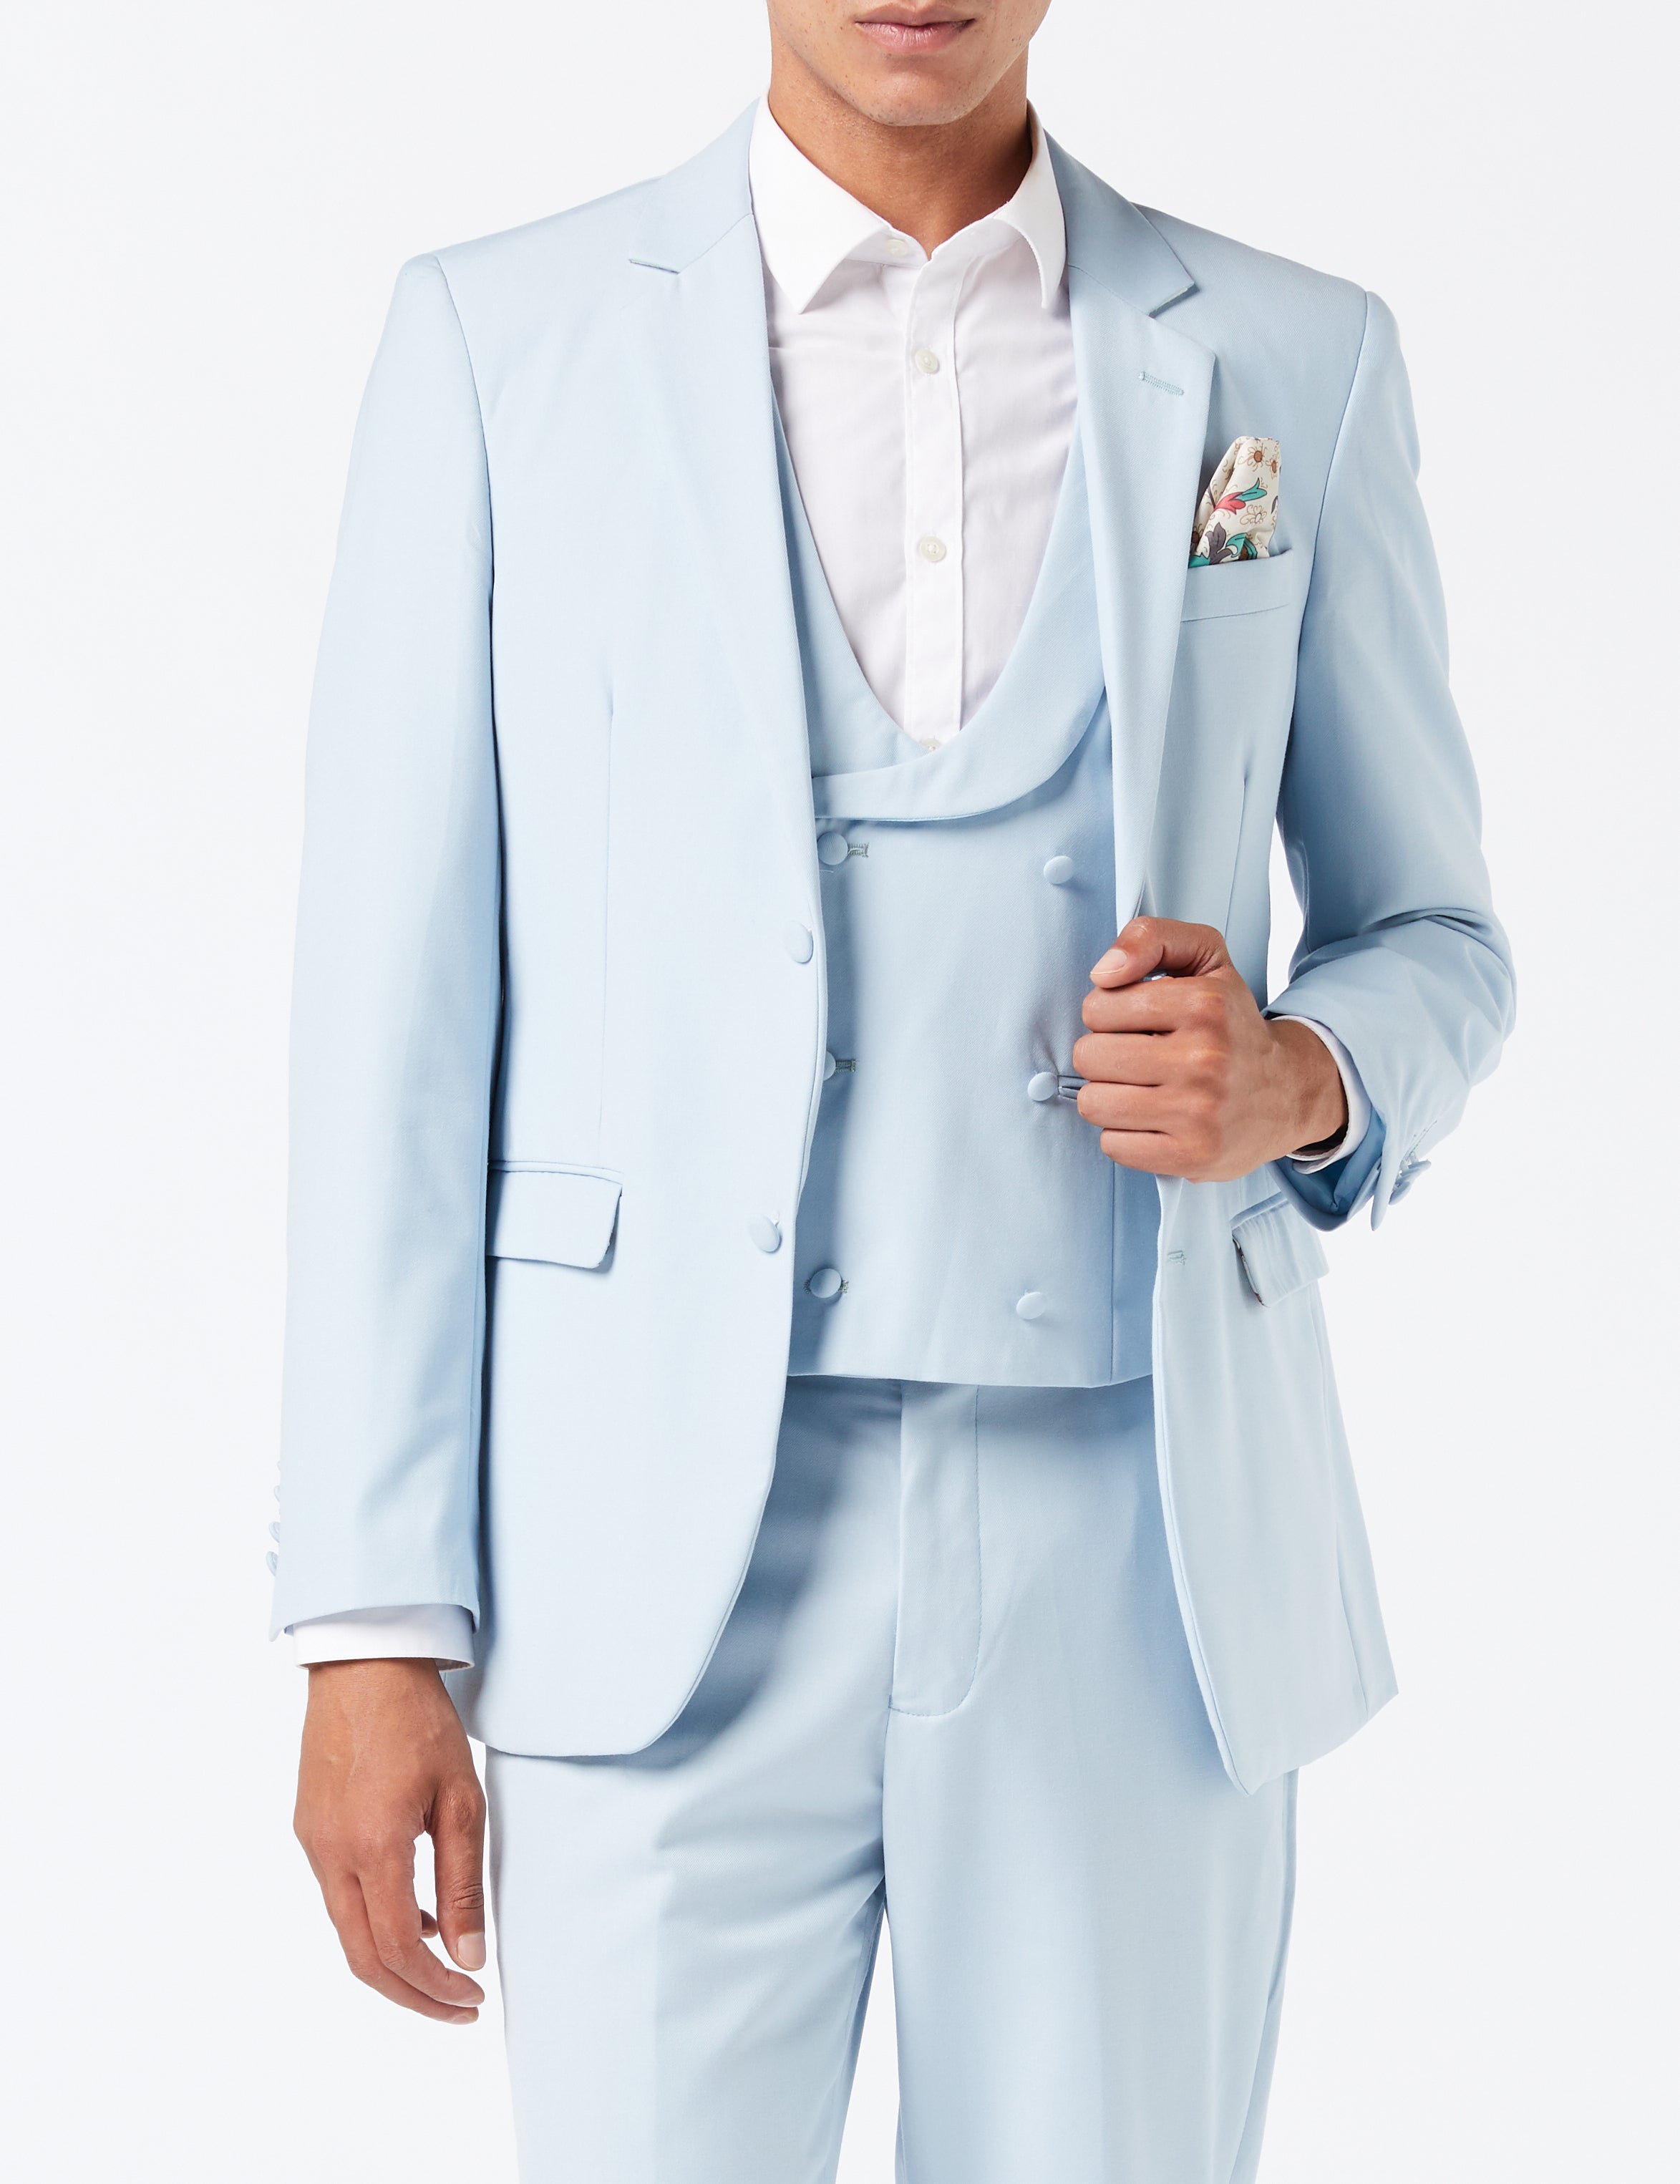 LETE - Pale Blue Summer Wedding Suit